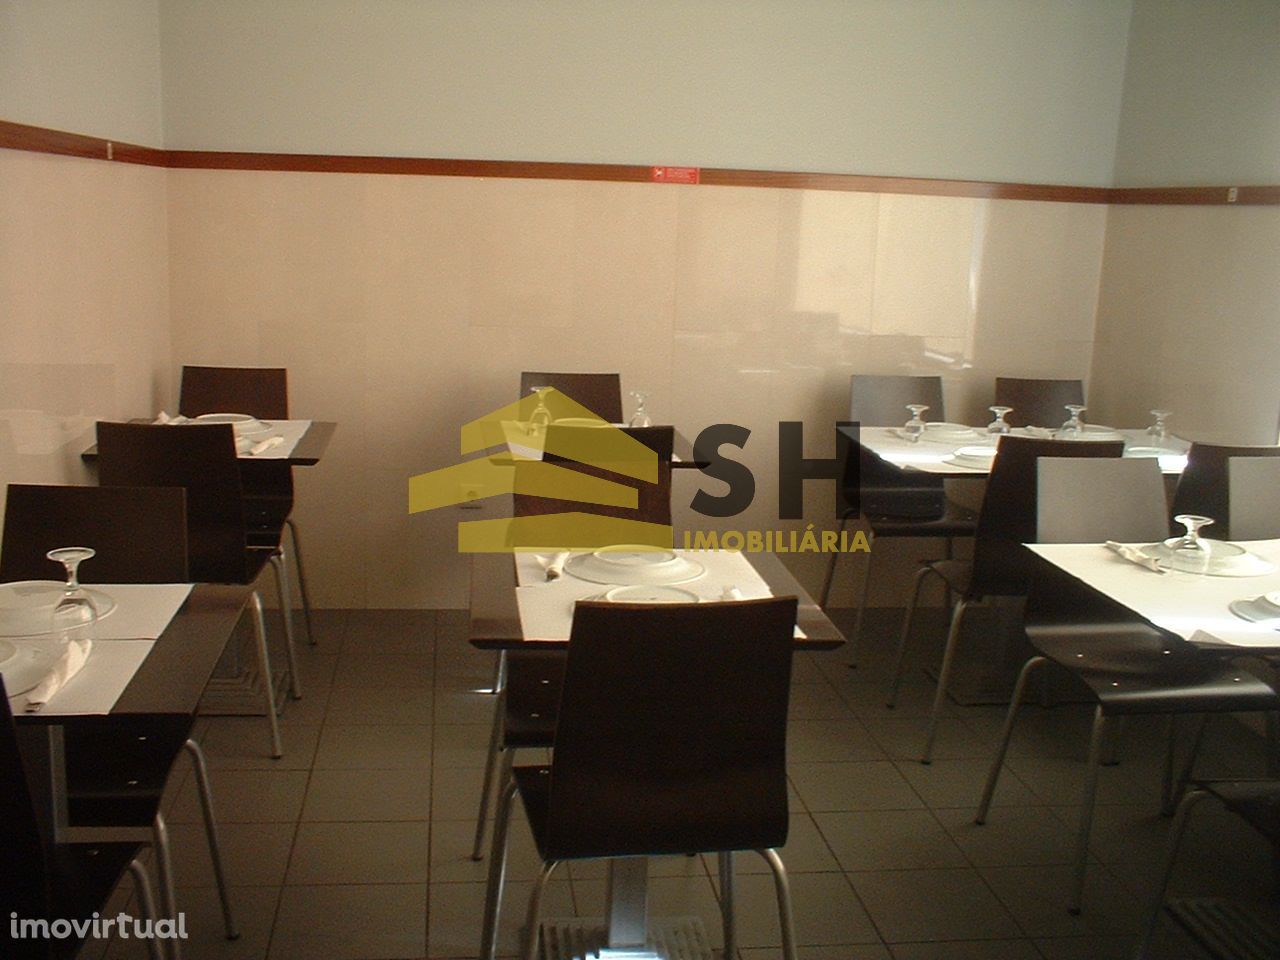 Café / Restaurante | Avintes, Vila Nova de Gaia